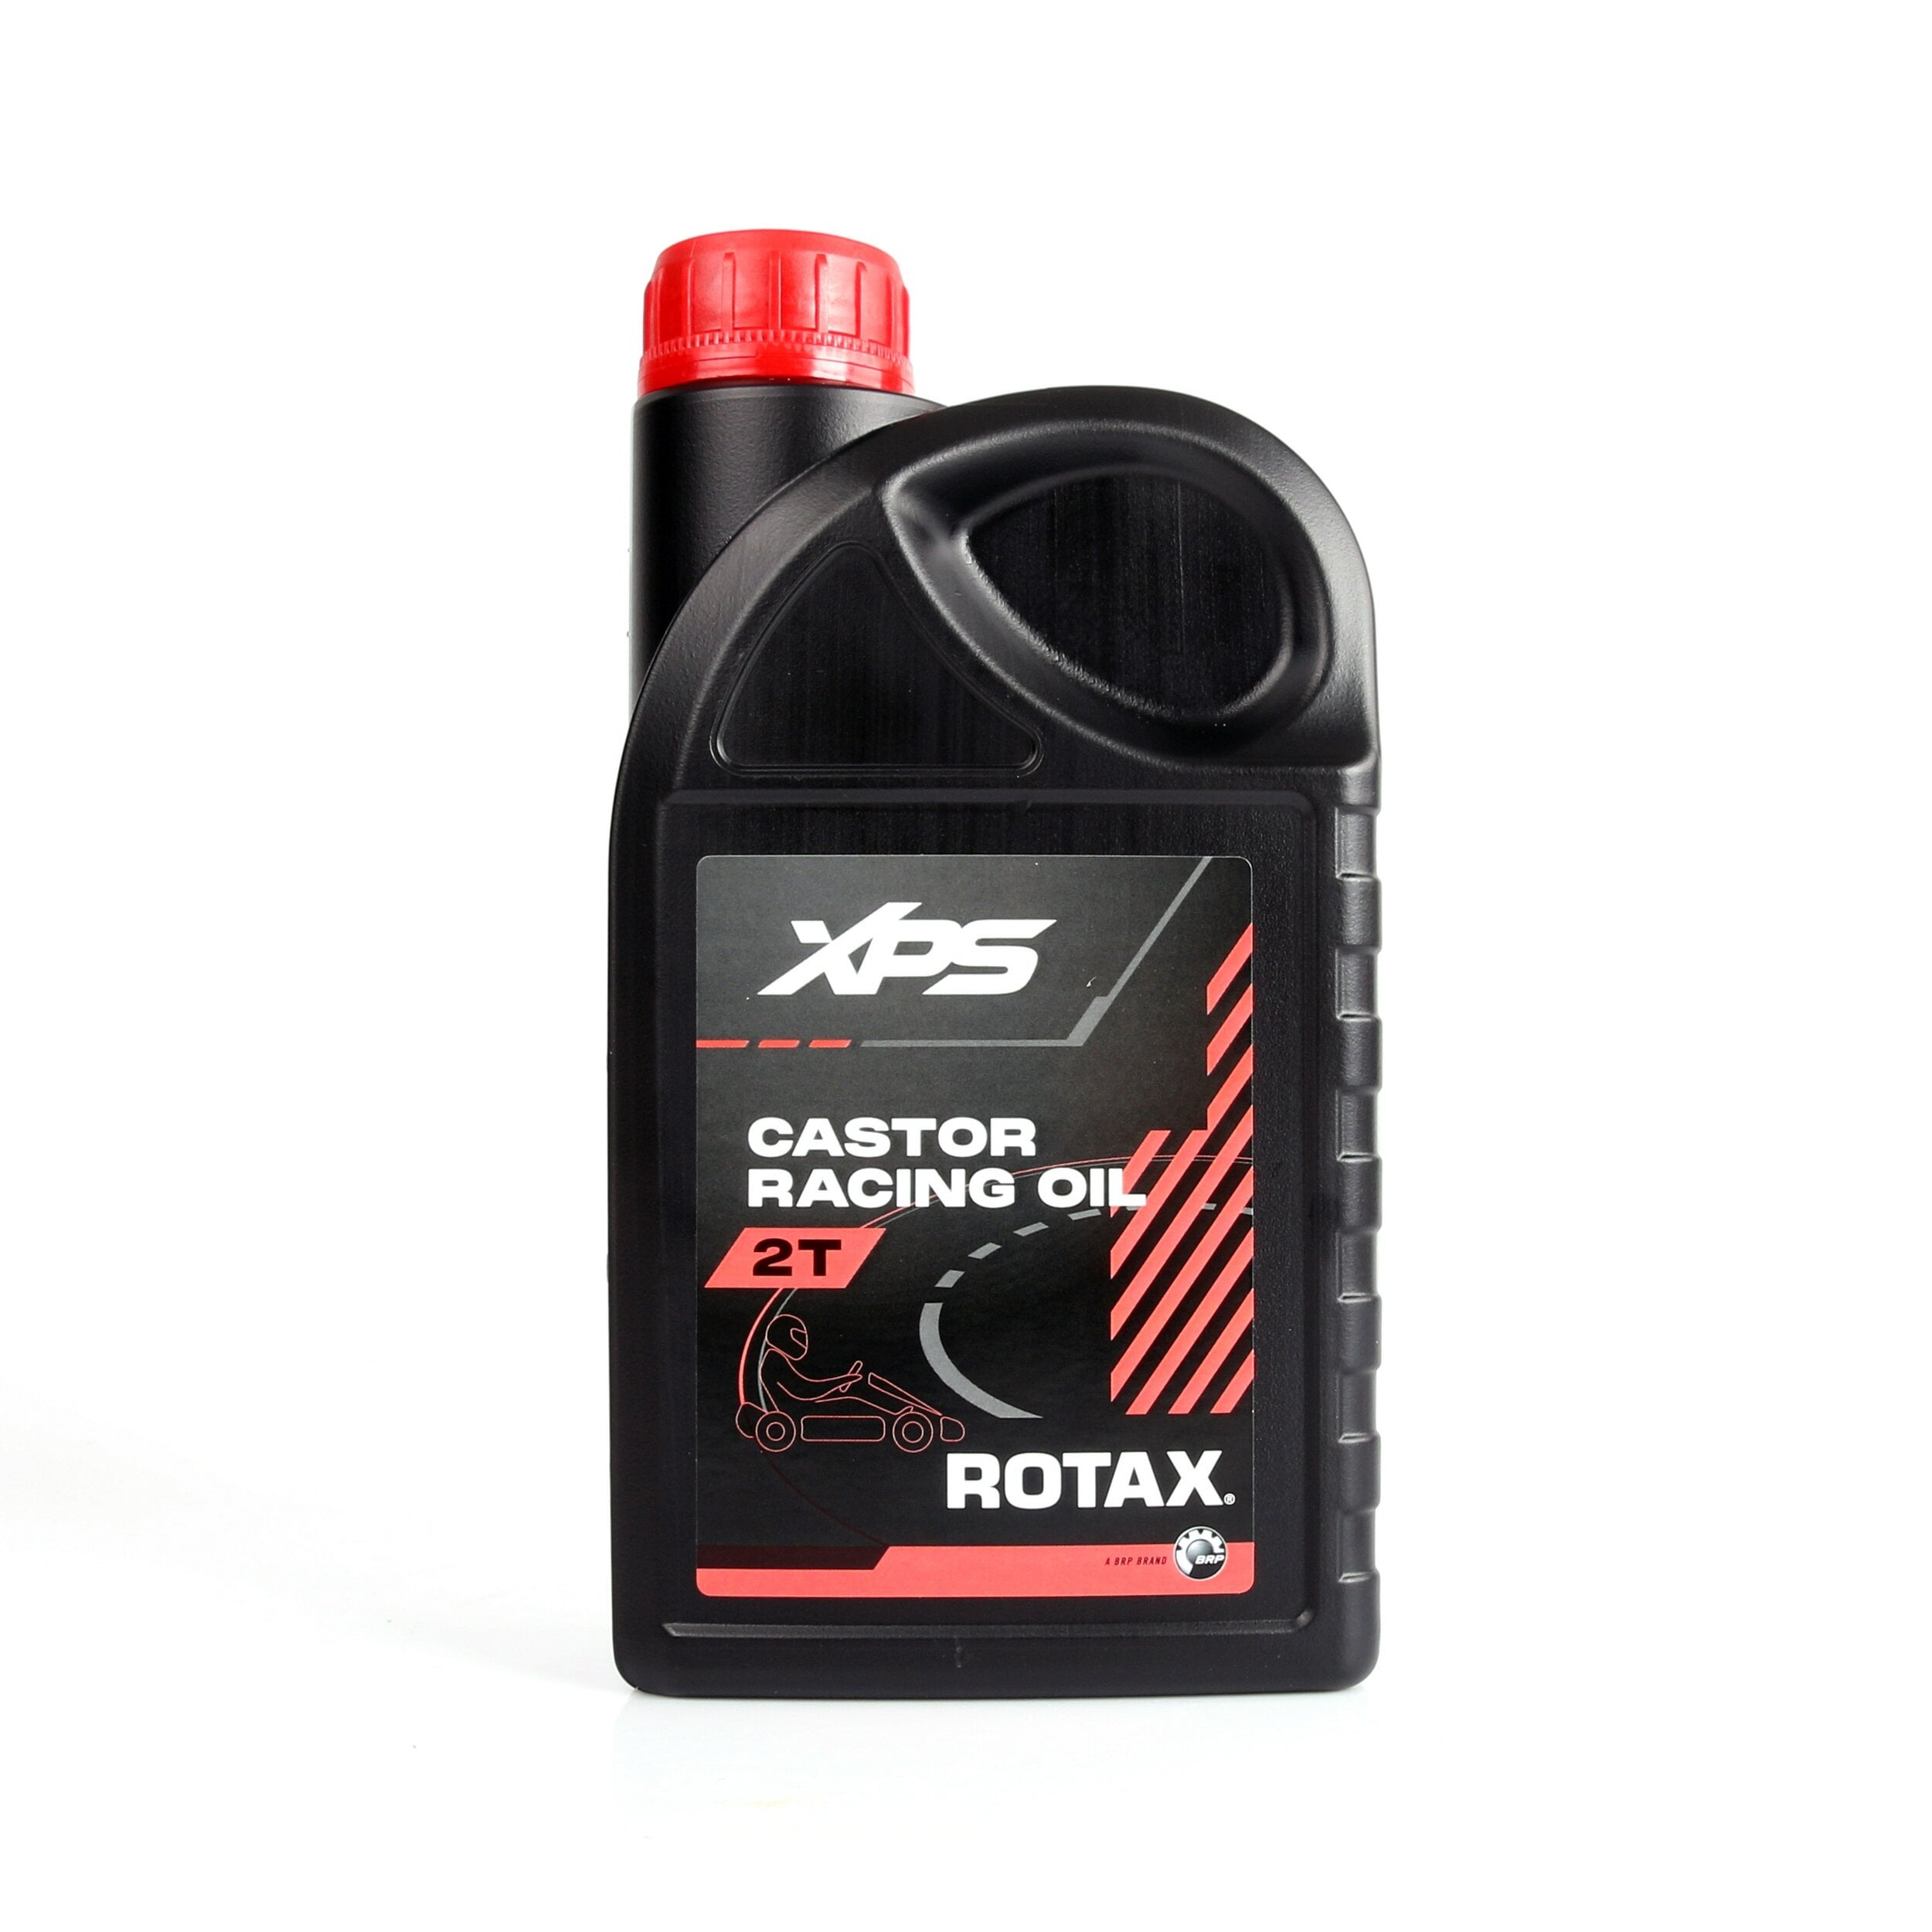 XPS Castor Racing Oil 2T